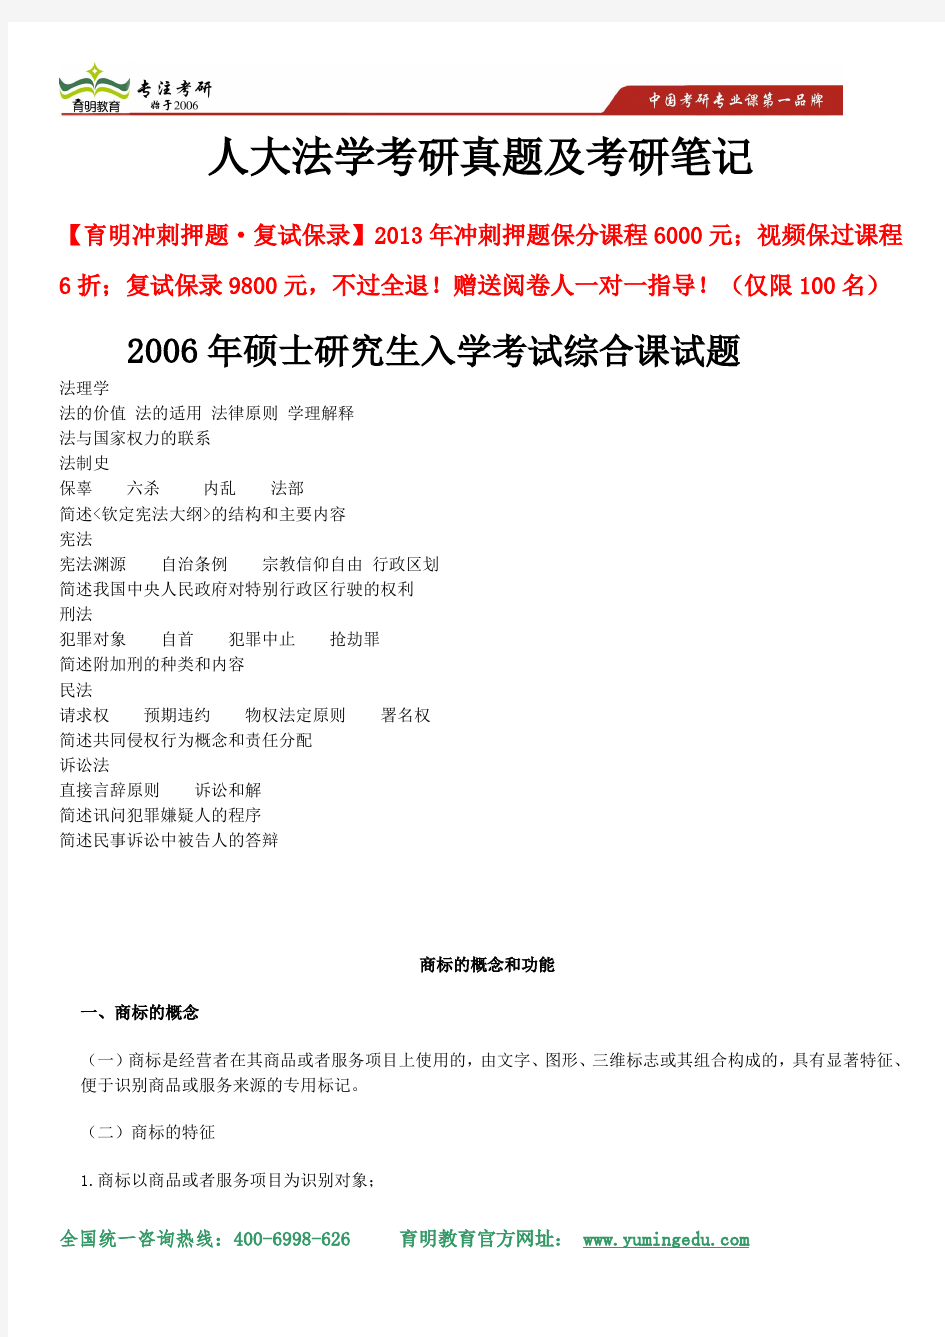 2014年中国人民大学法学考研考试综合课真题 、考点重点解析及专业课考研笔记